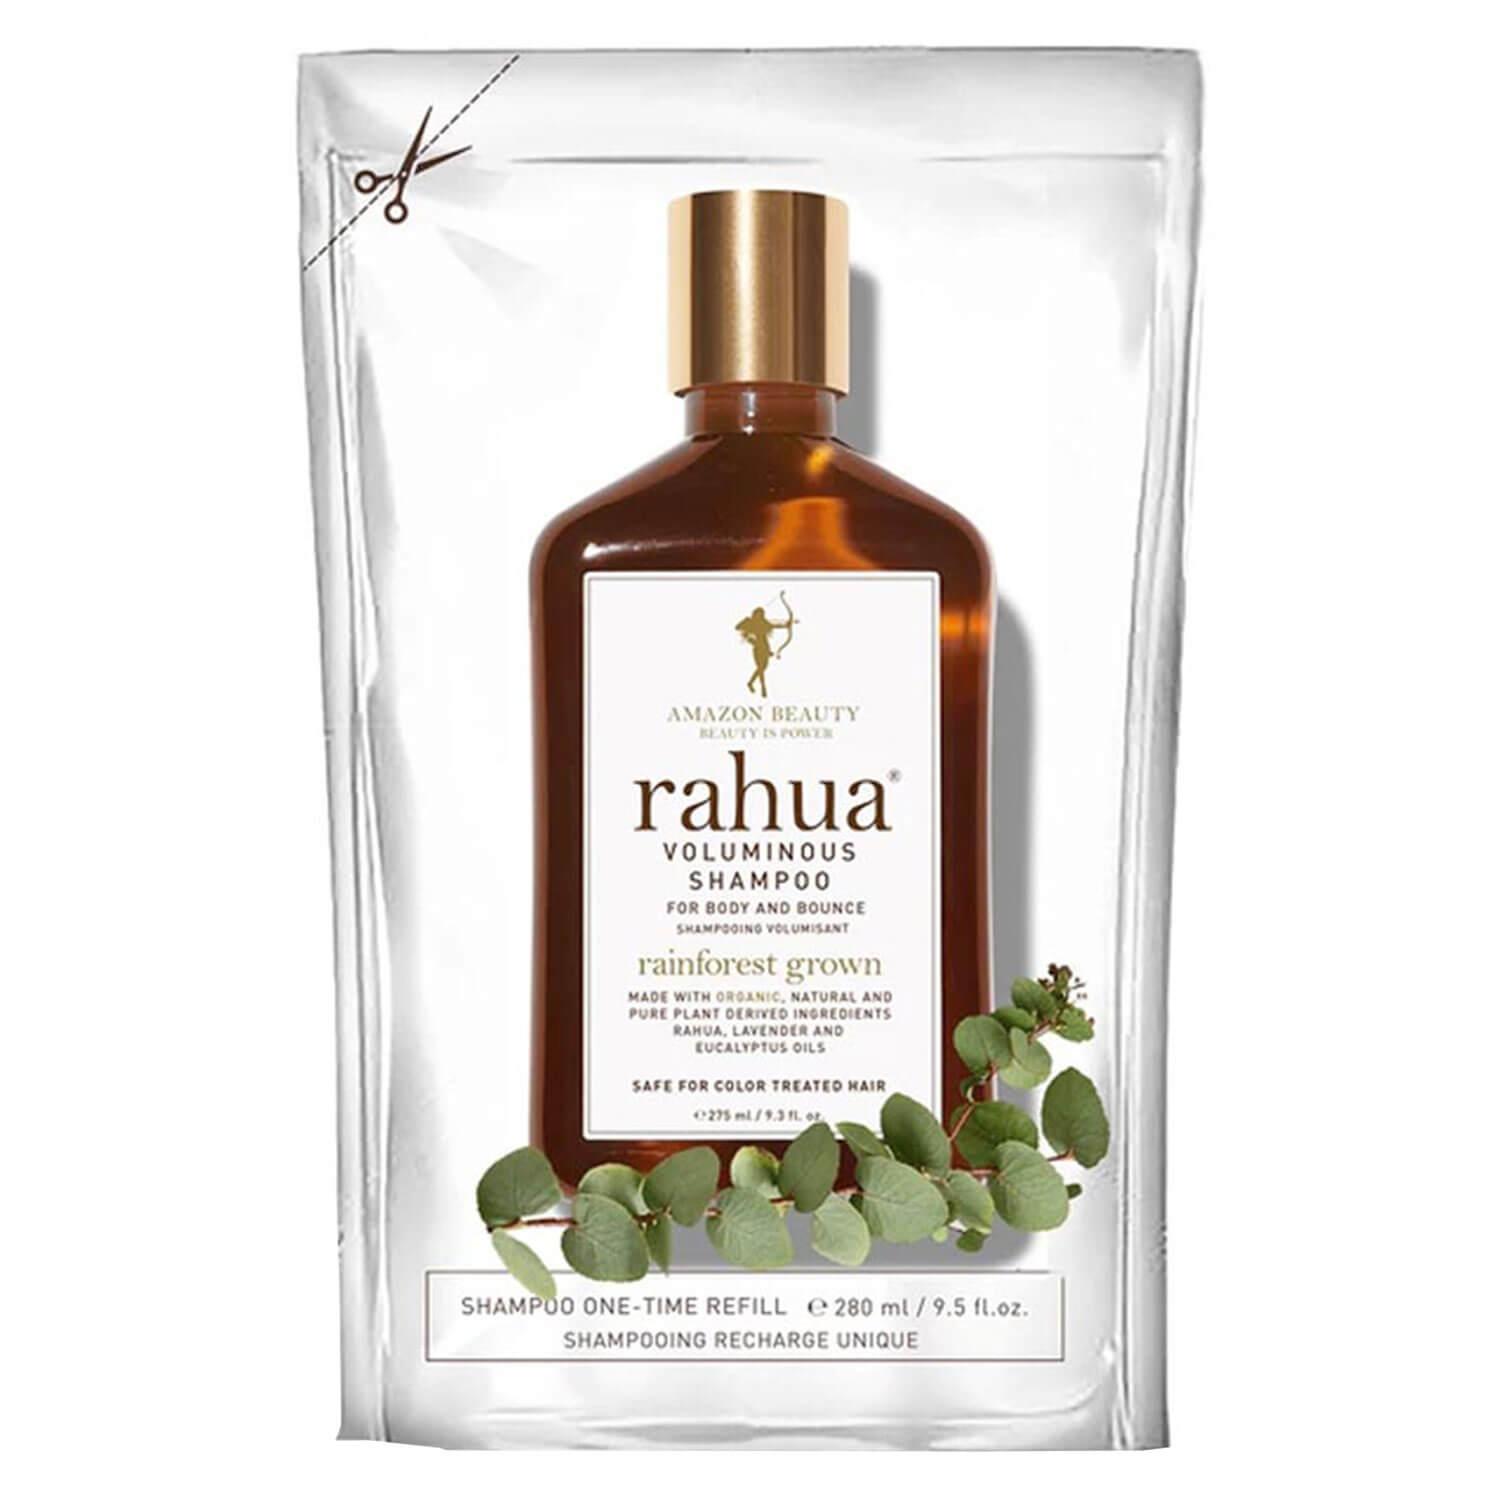 Rahua Daily Care - Voluminous Shampoo Refill